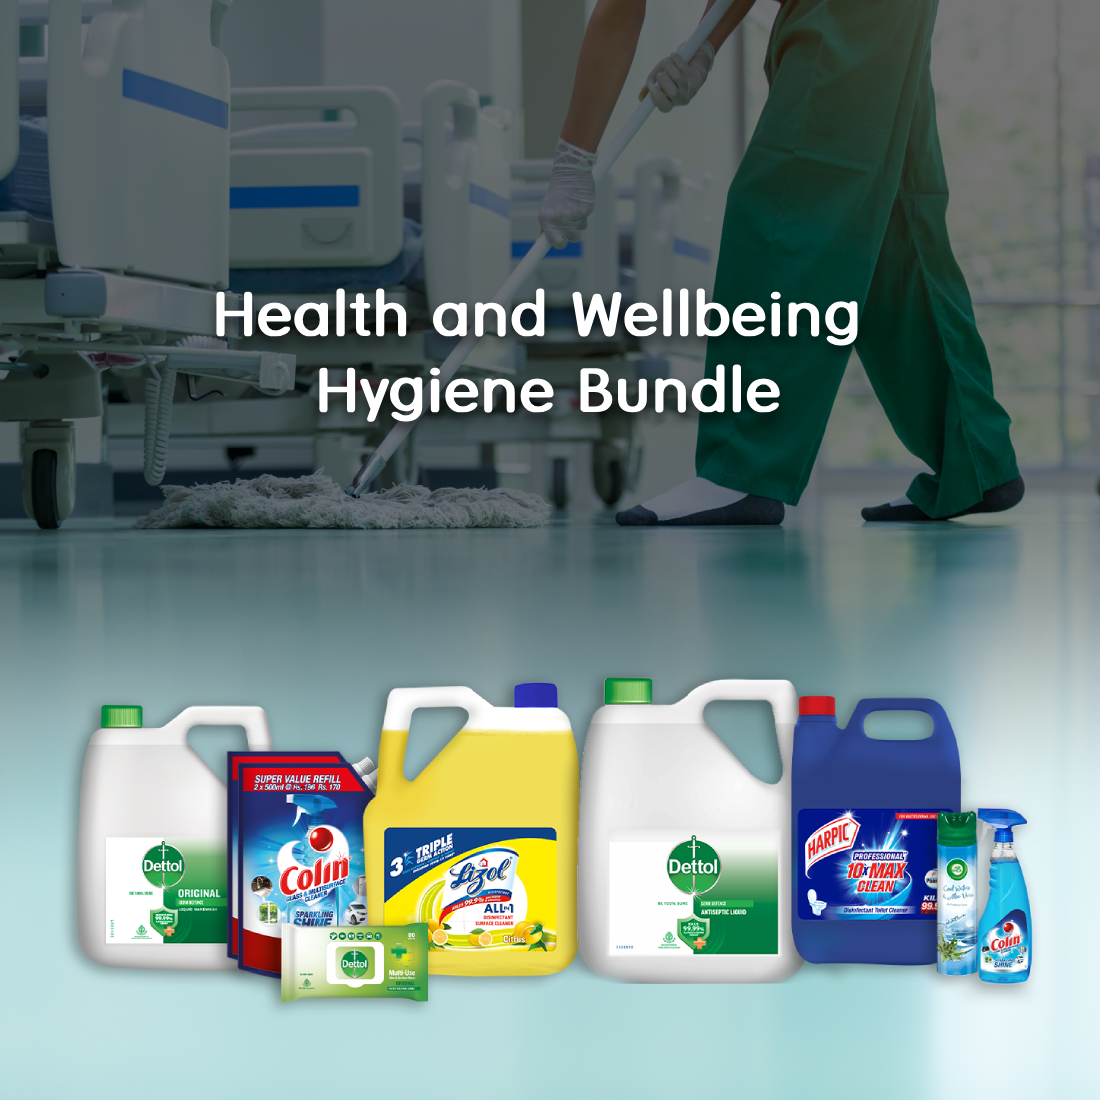 Health and Wellbeing Hygiene Bundle*